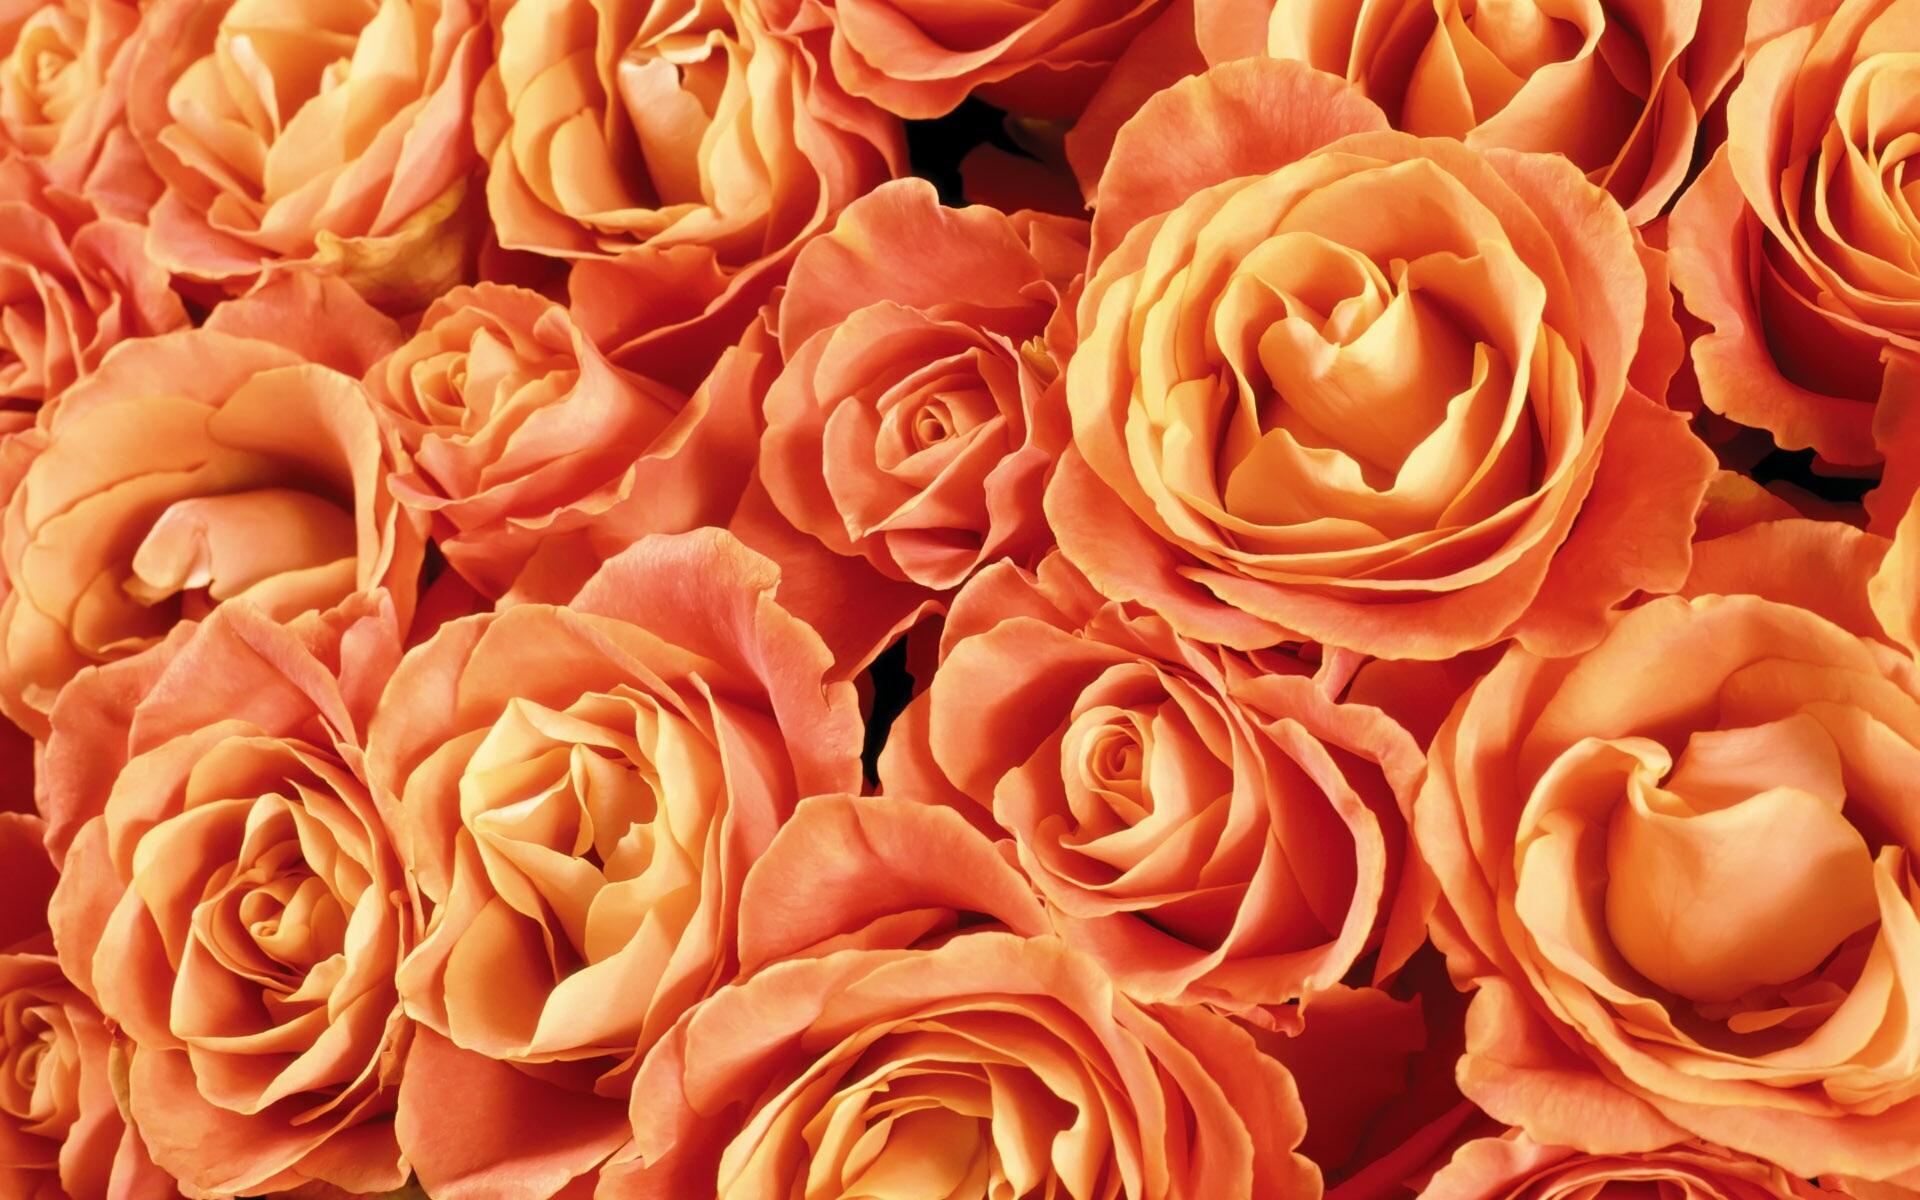 Với nền hoa hồng màu cam rực rỡ, bức ảnh này chắc chắn sẽ thu hút sự chú ý của bạn. Sắc cam tươi sáng và đầy năng lượng mang đến một không gian nghệ thuật cực kỳ độc đáo và thu hút. Hãy để bức ảnh này mang đến sự vui tươi cho cuộc sống của bạn!